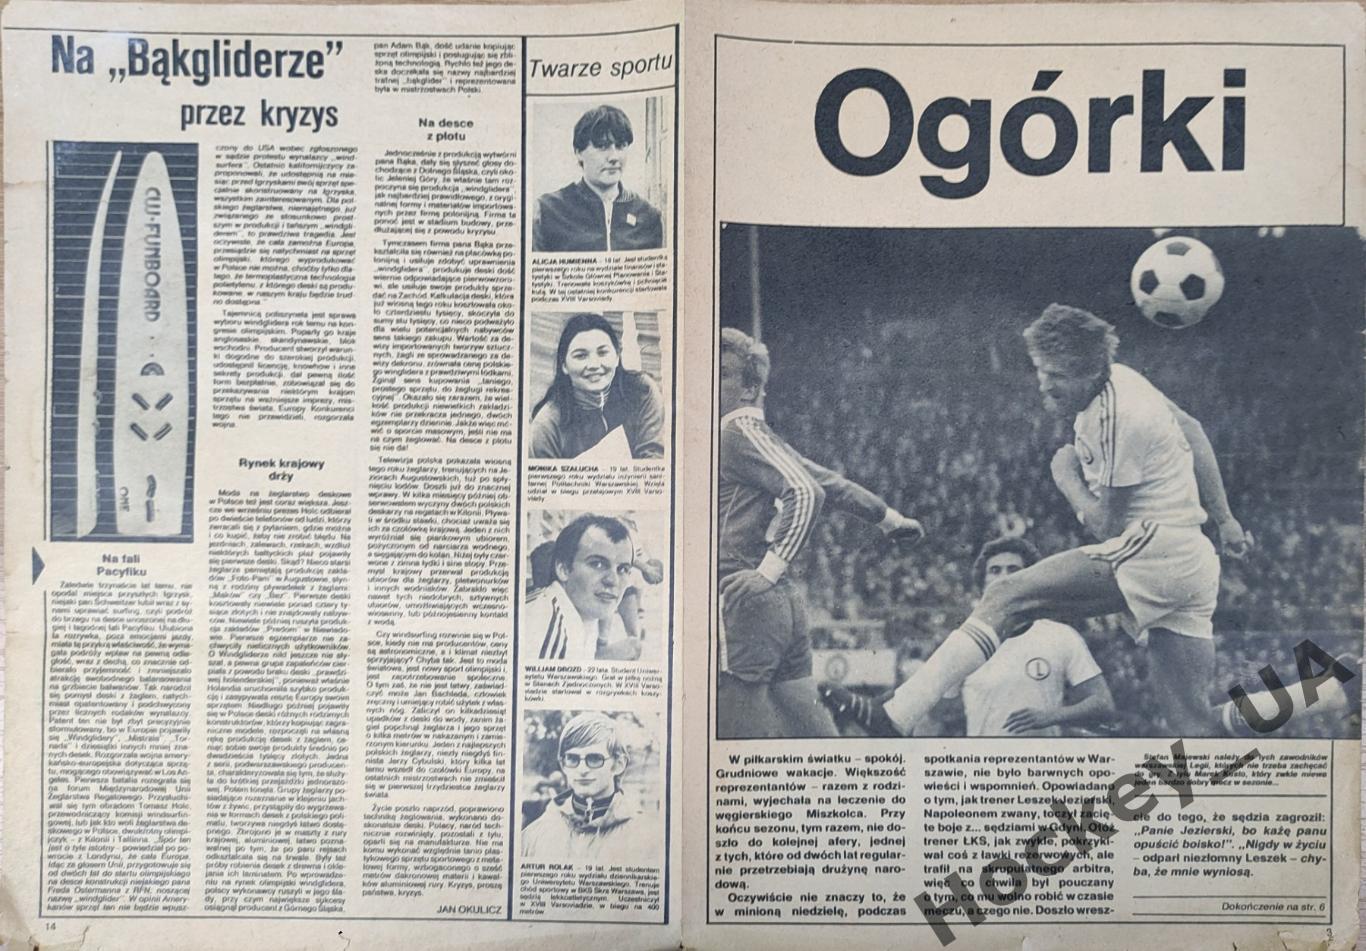 Журнал Sportowiec №49 9.12.1981 г. 1